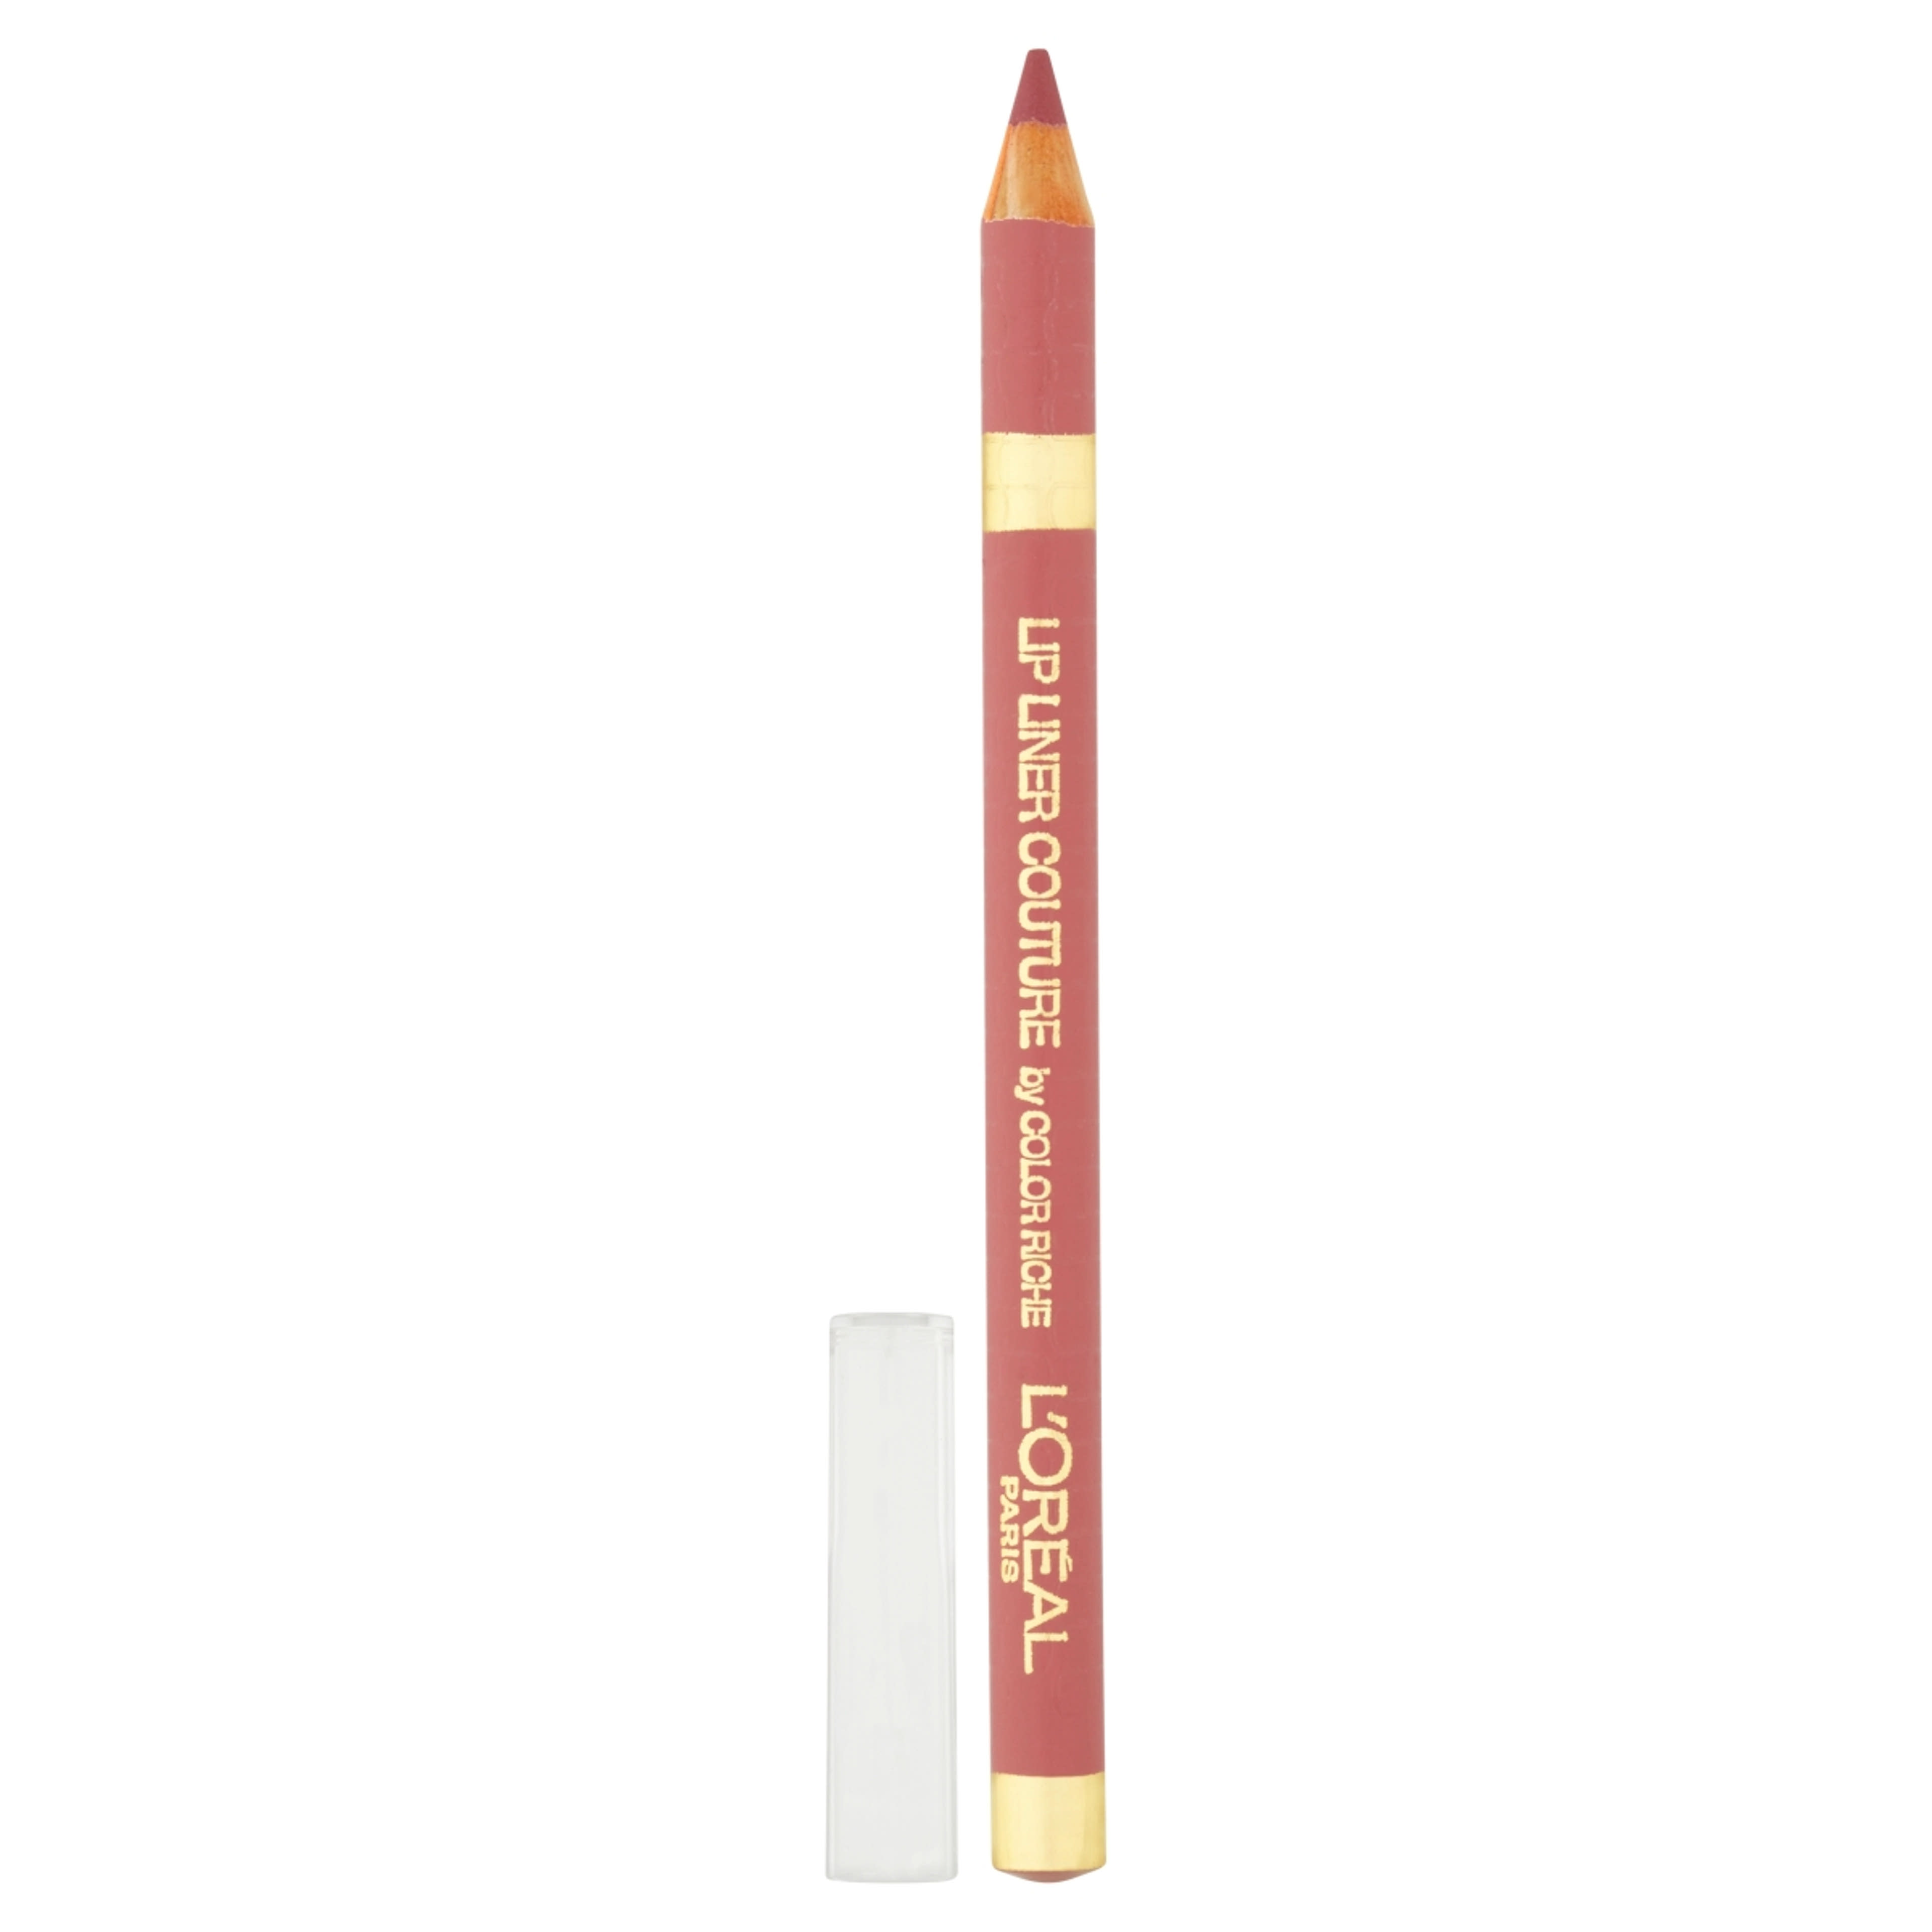 L'Oréal Paris Color Riche ajakkontúr ceruza /630 - 1 db-2